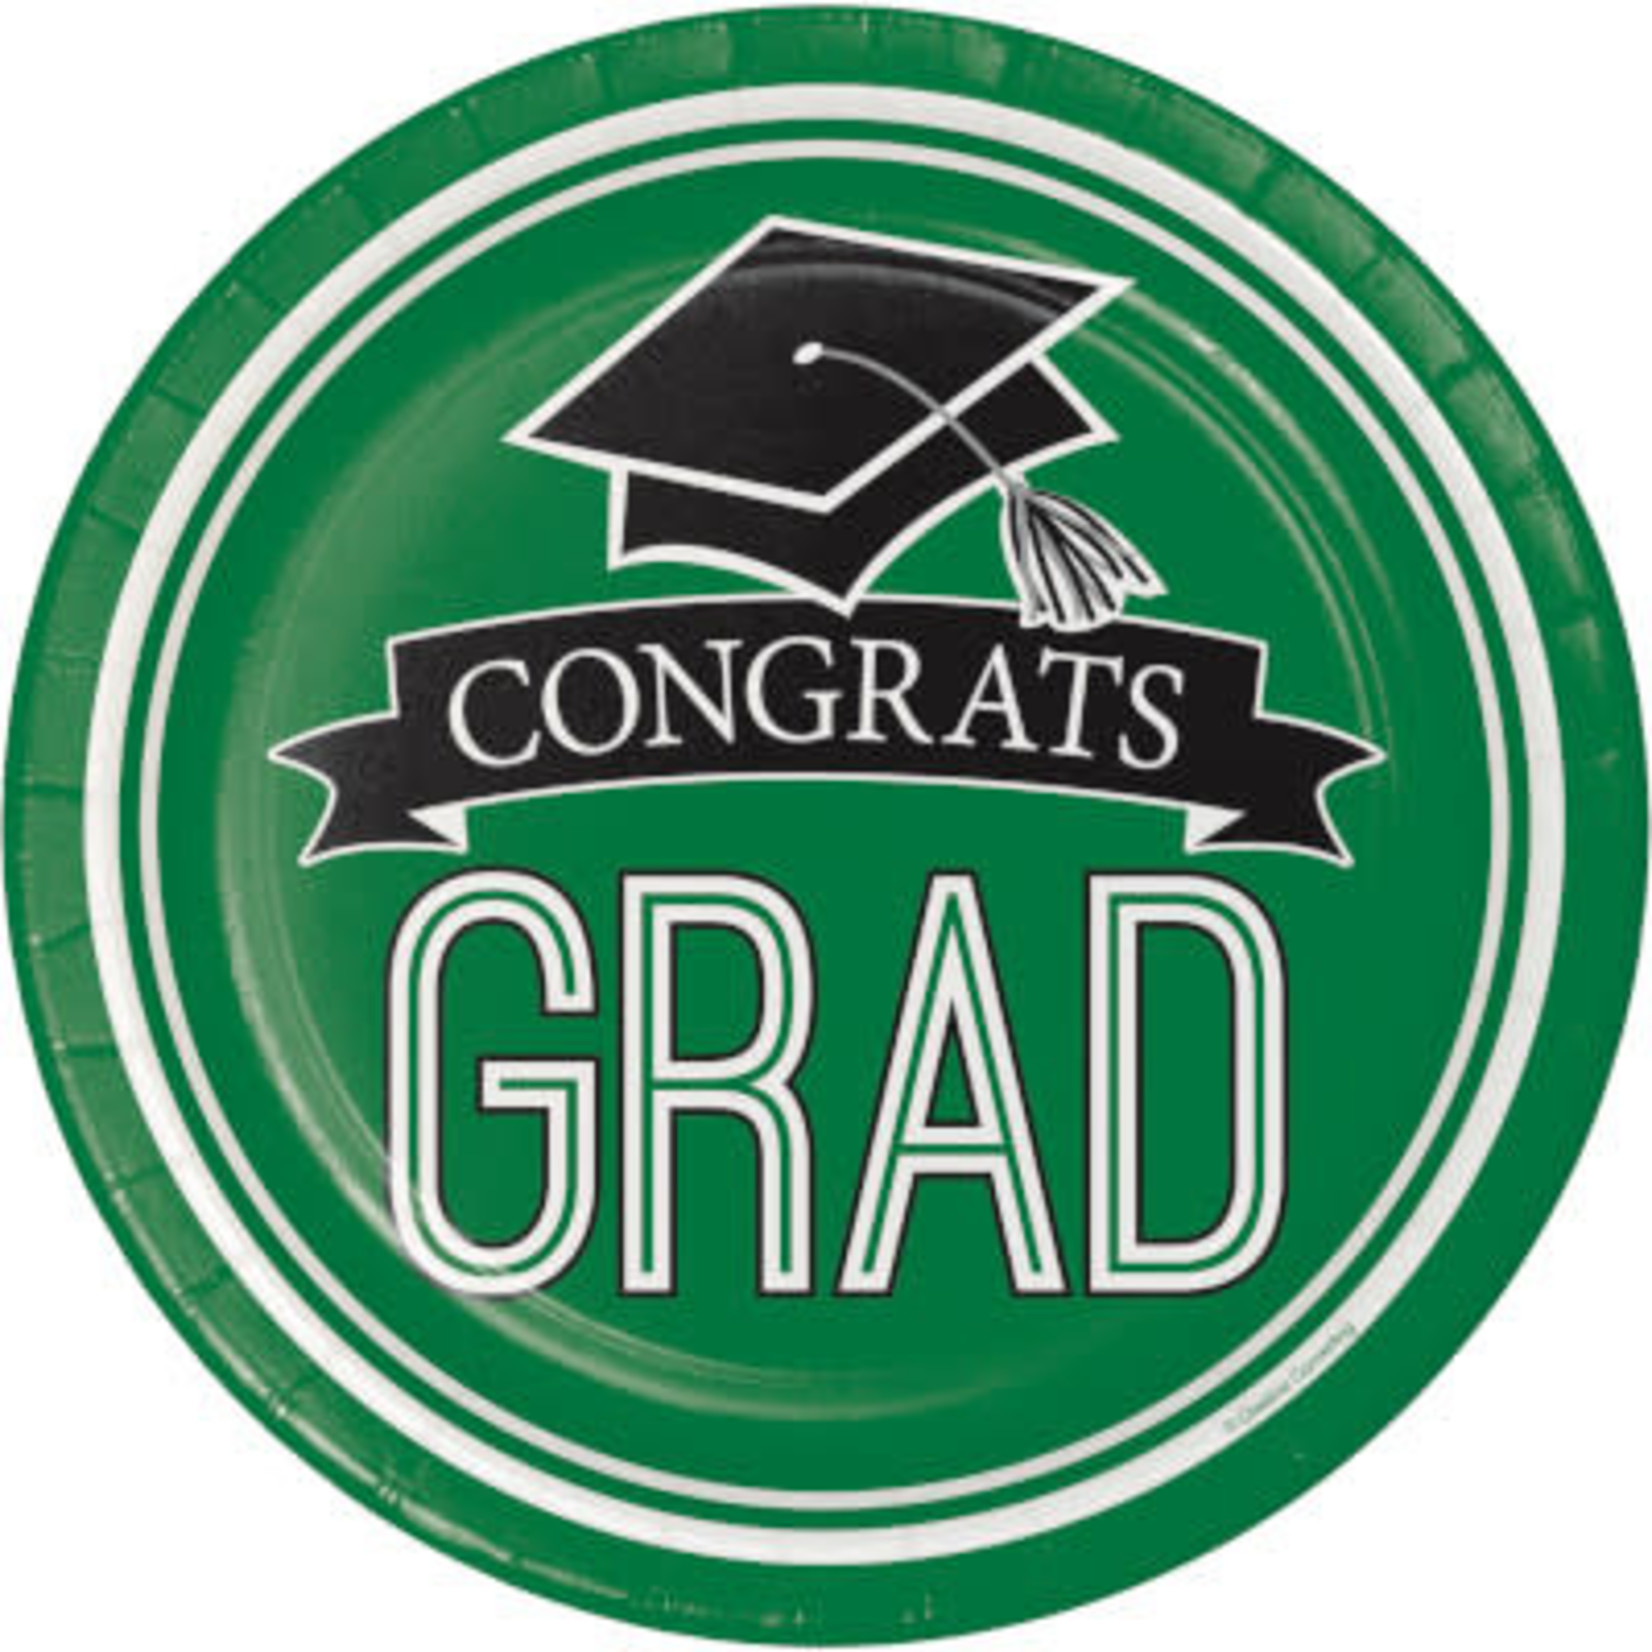 Creative Converting 7" Green Congrats Grad Plates - 18ct.